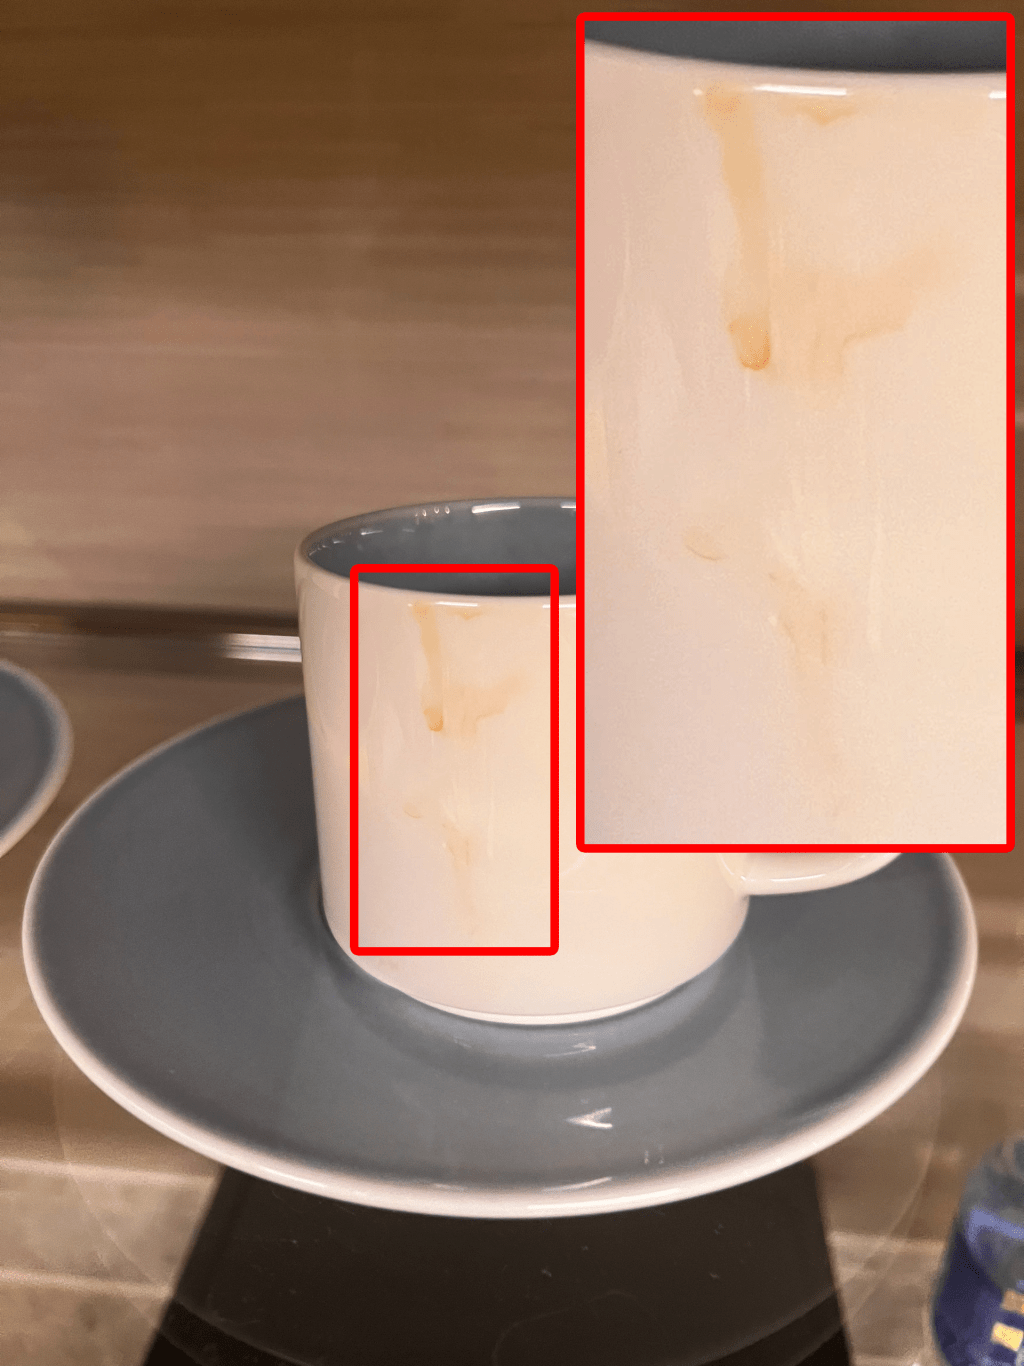 酒店的房务部总监表示：「经过检查后，杯边的啡色痕迹为陶瓷烧制咖啡杯原有的花纹设计。」